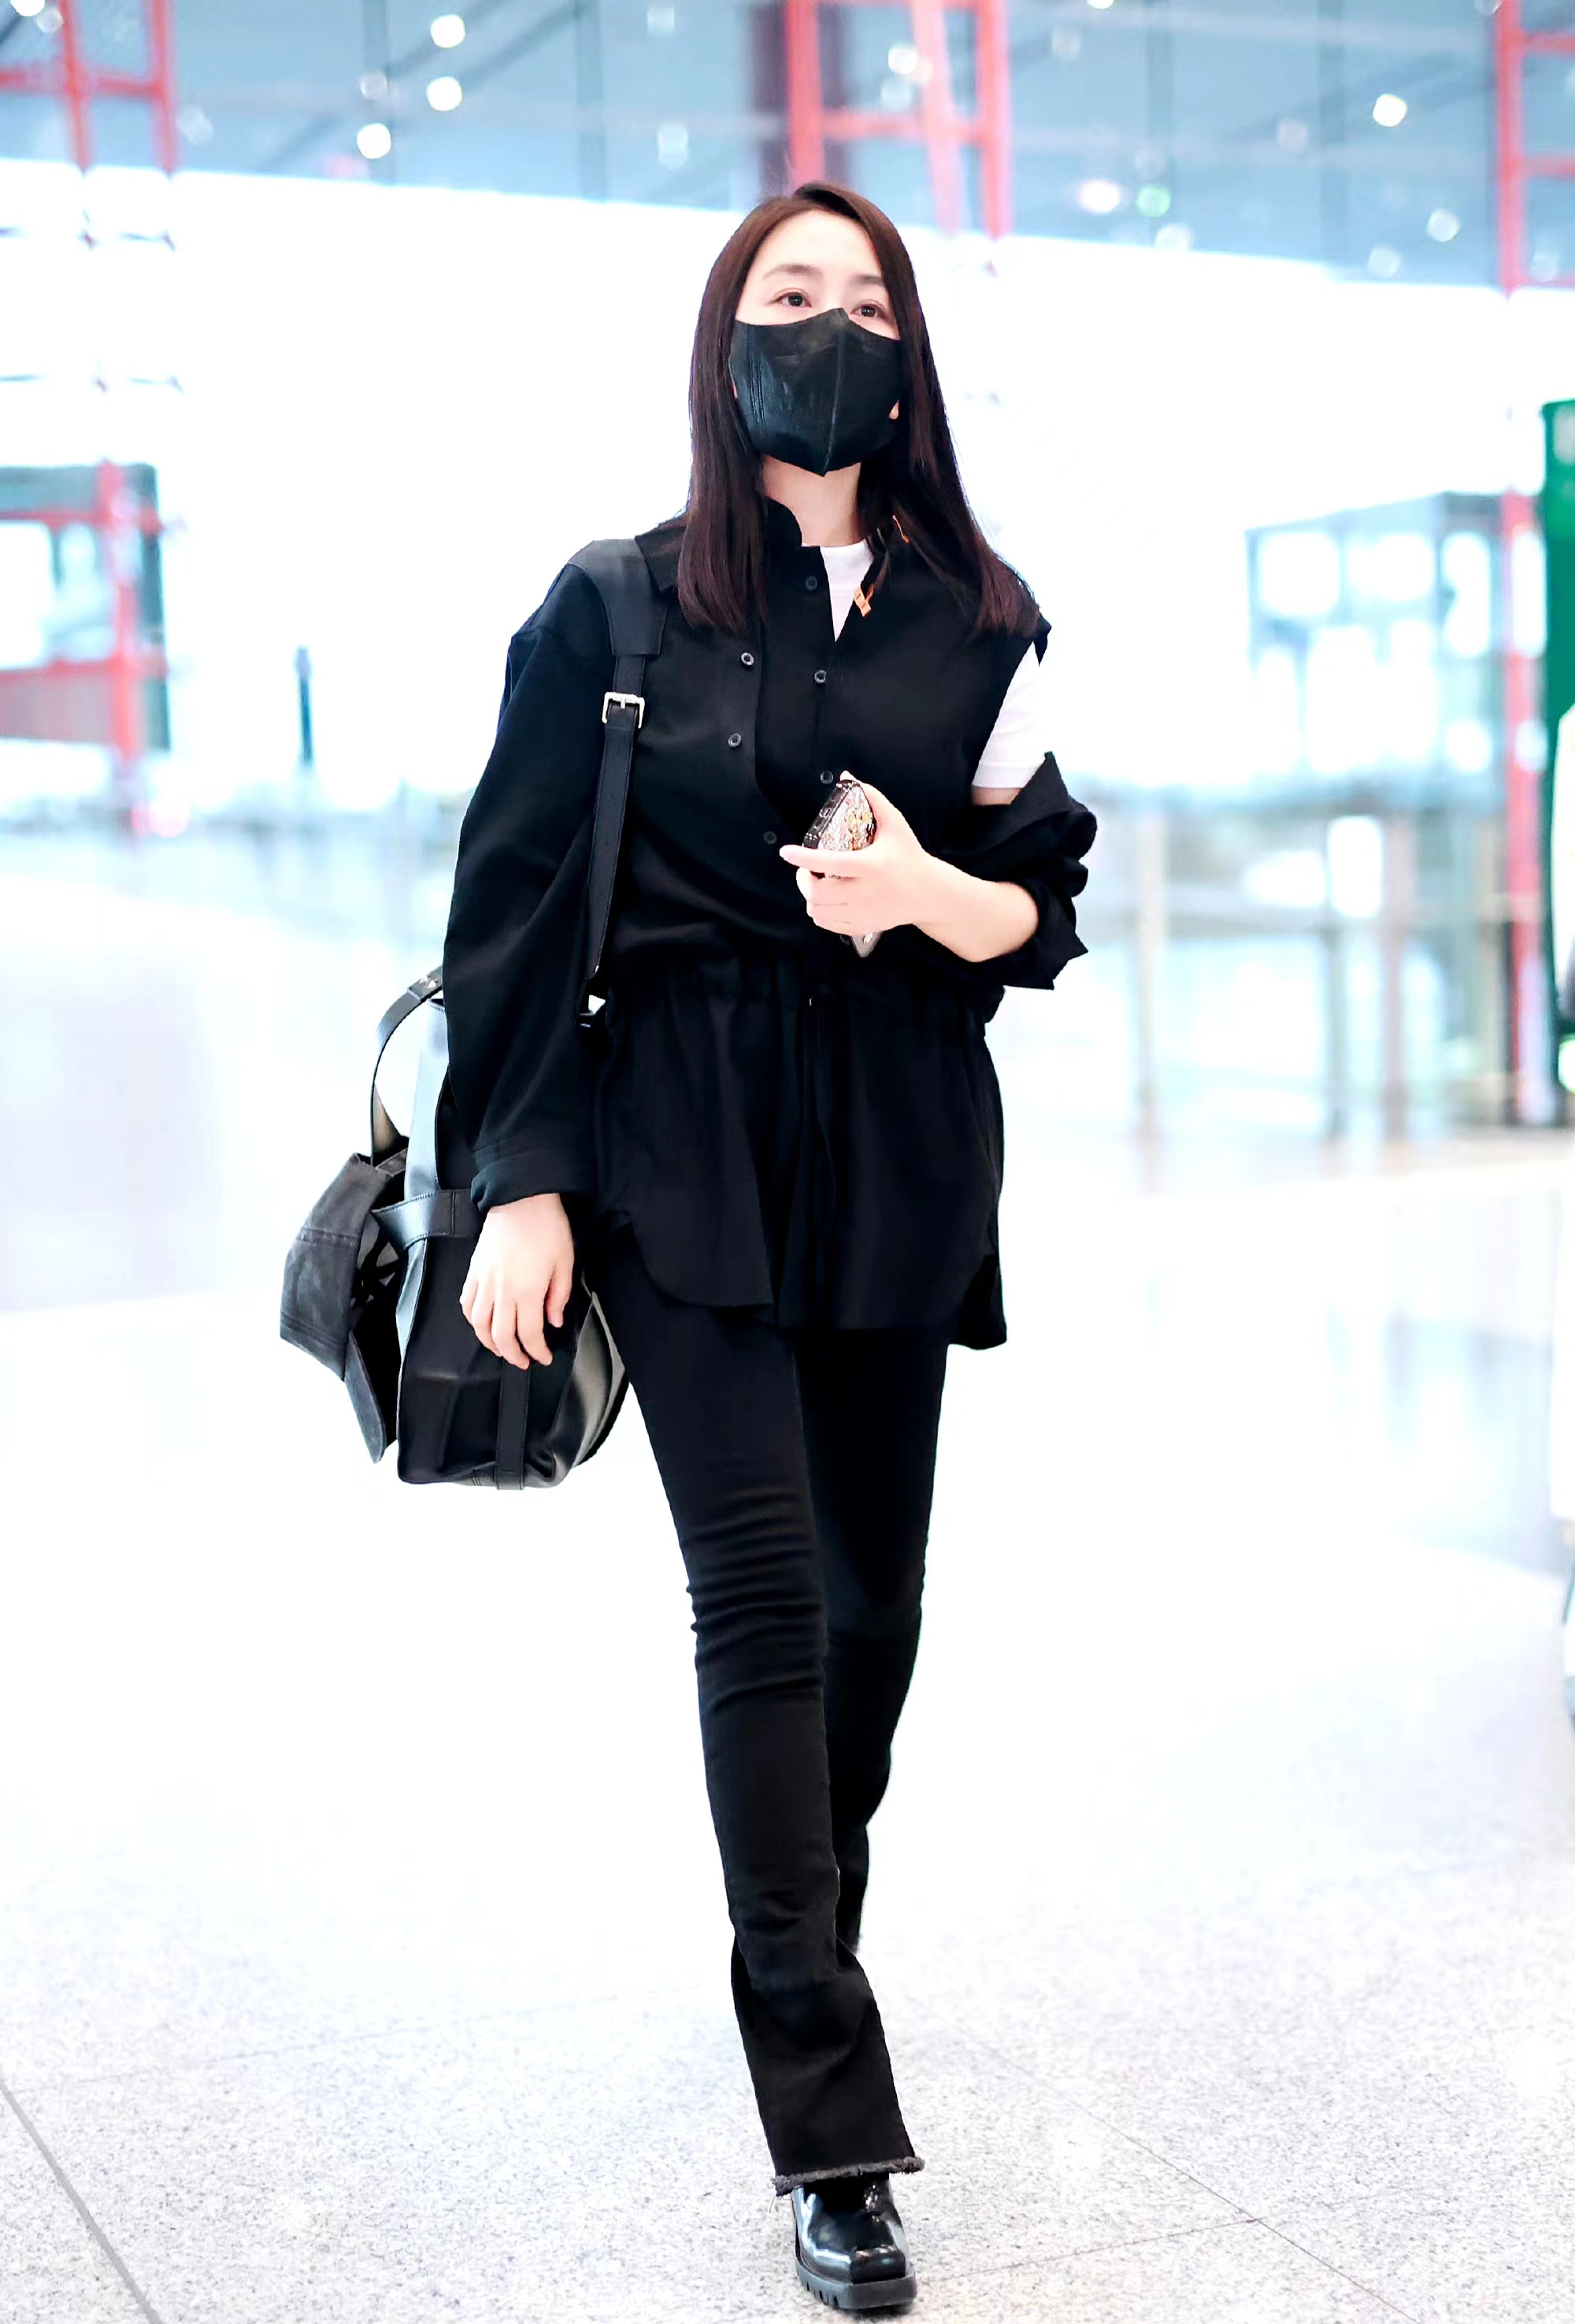 马苏现身机场,一身黑色装扮休闲随性,短袖配马甲很时髦!